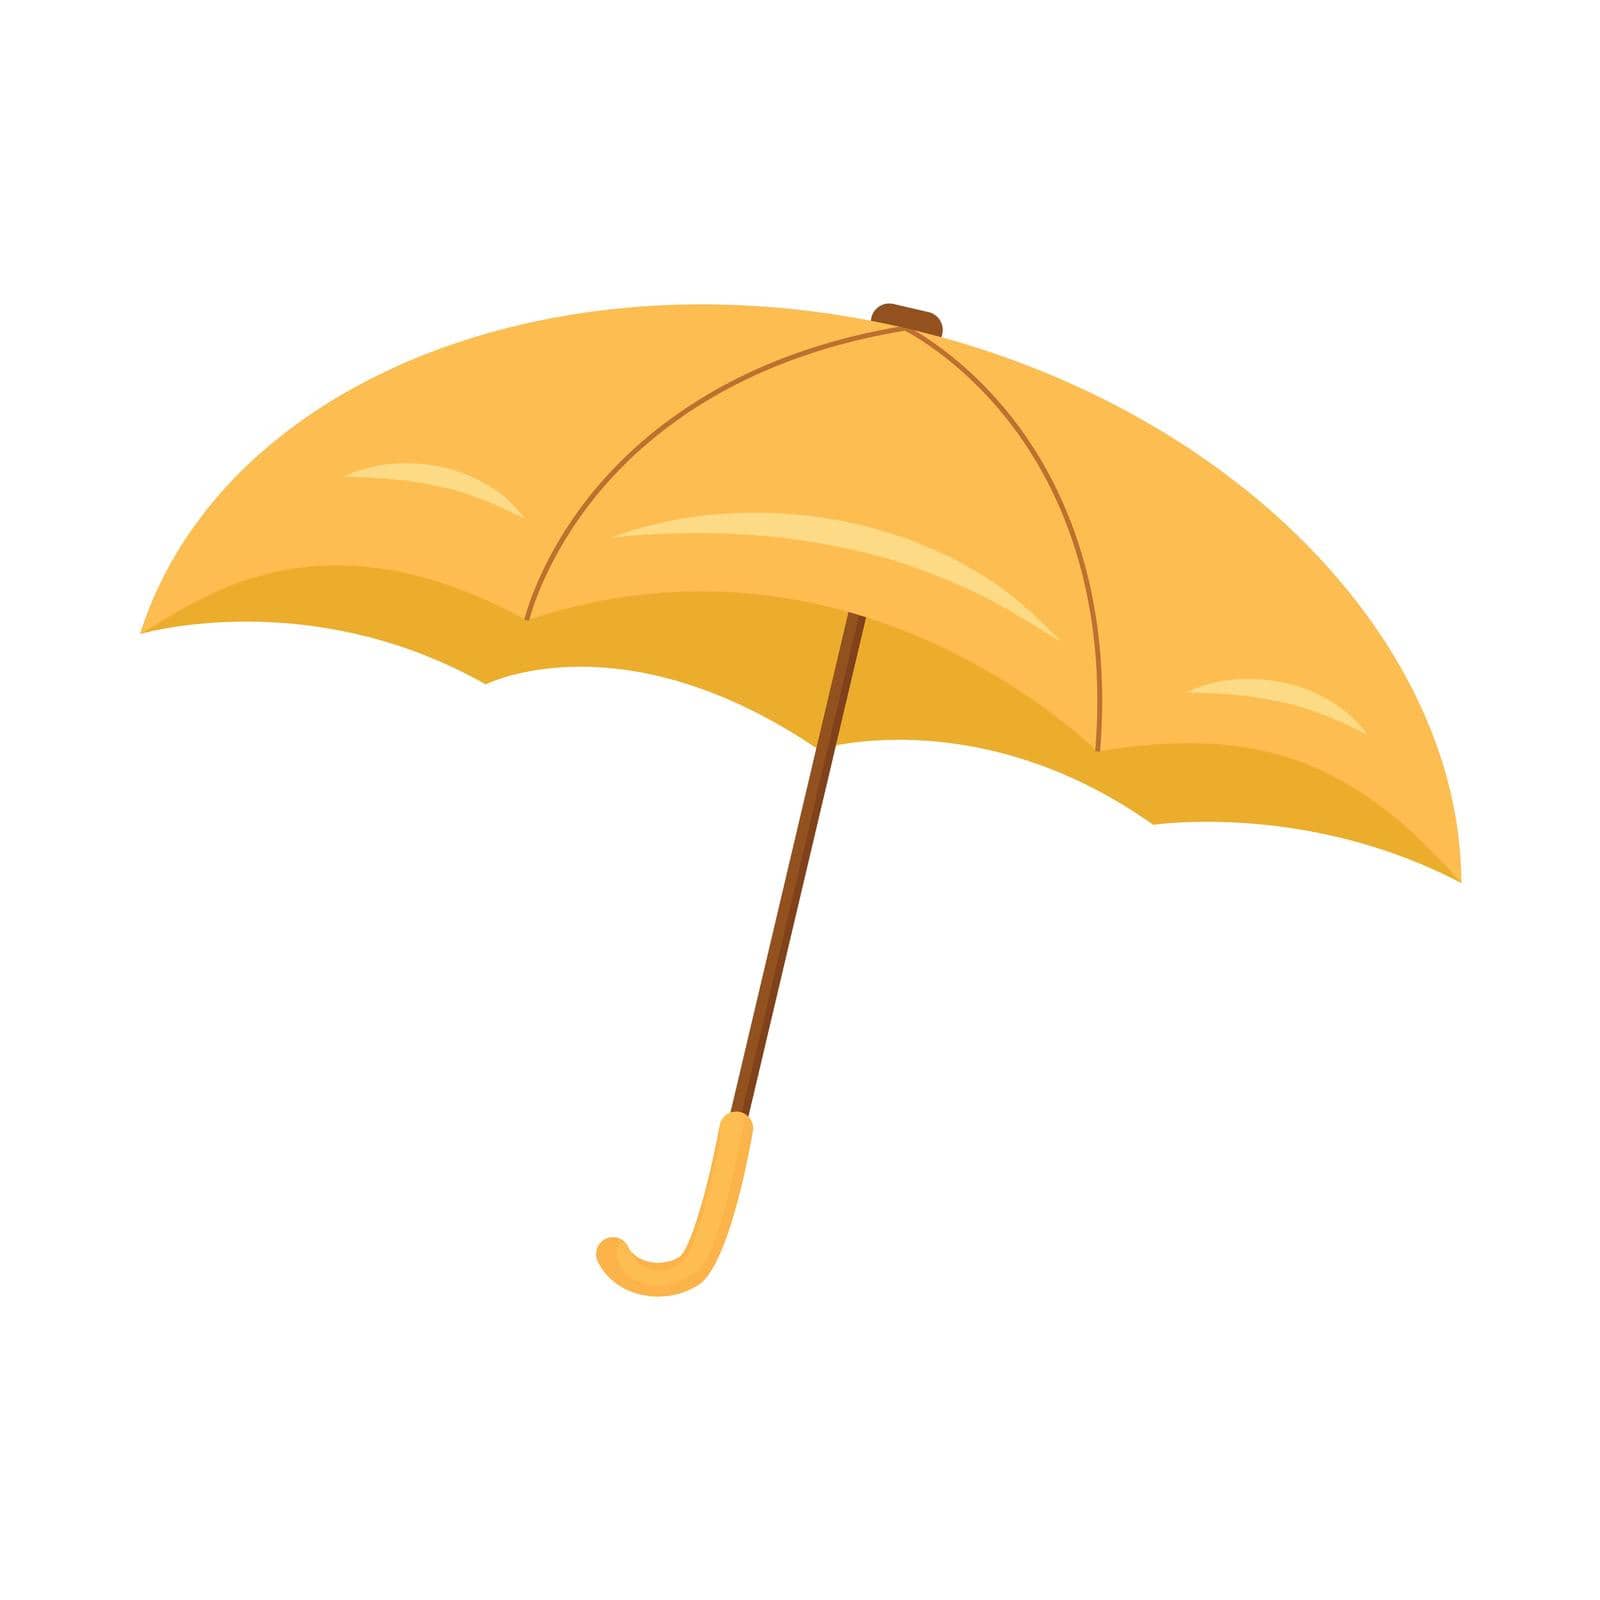 Umbrella semi flat color vector element by ntl